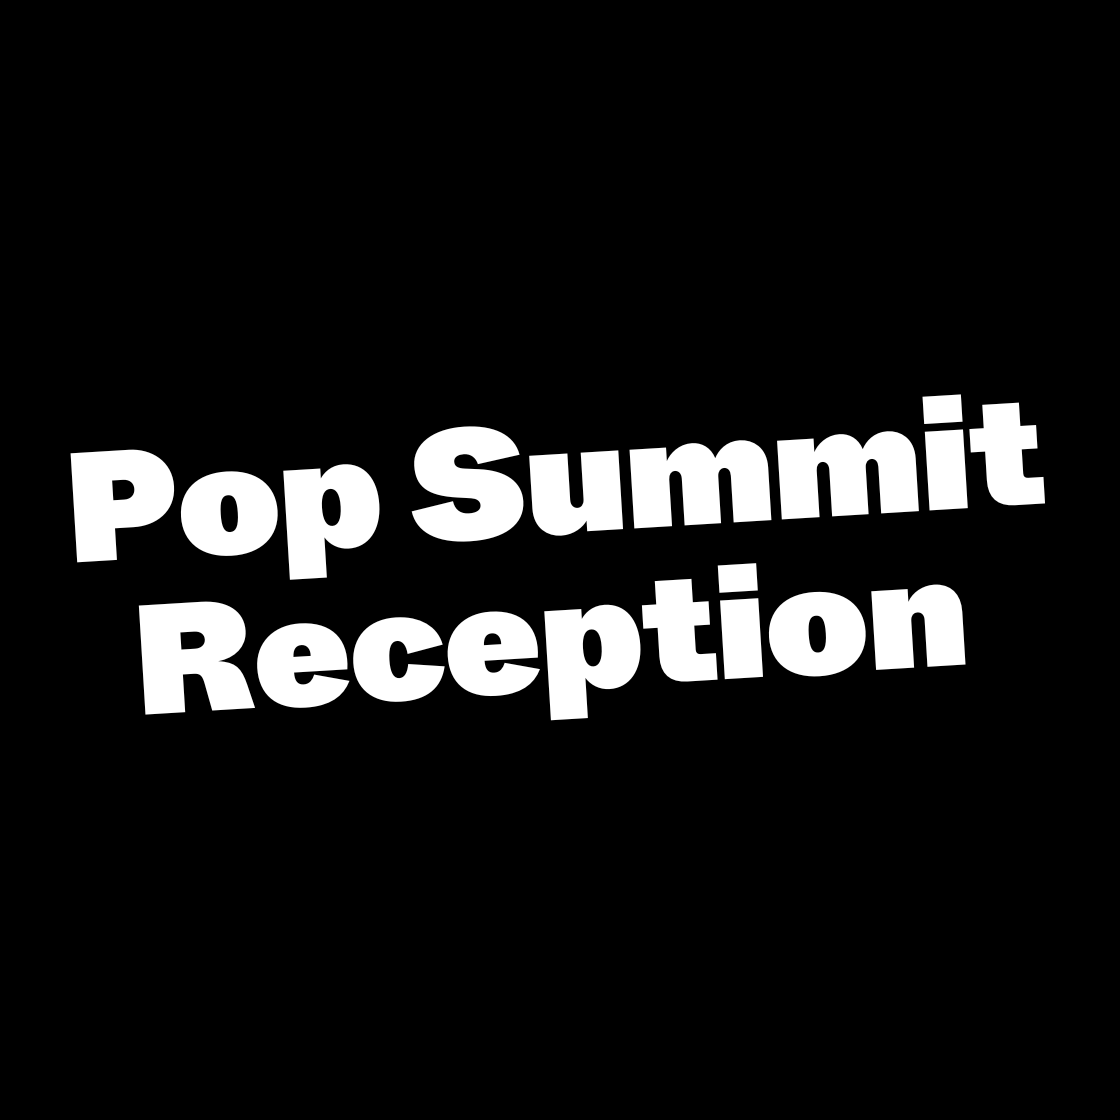 Pop Summit Reception